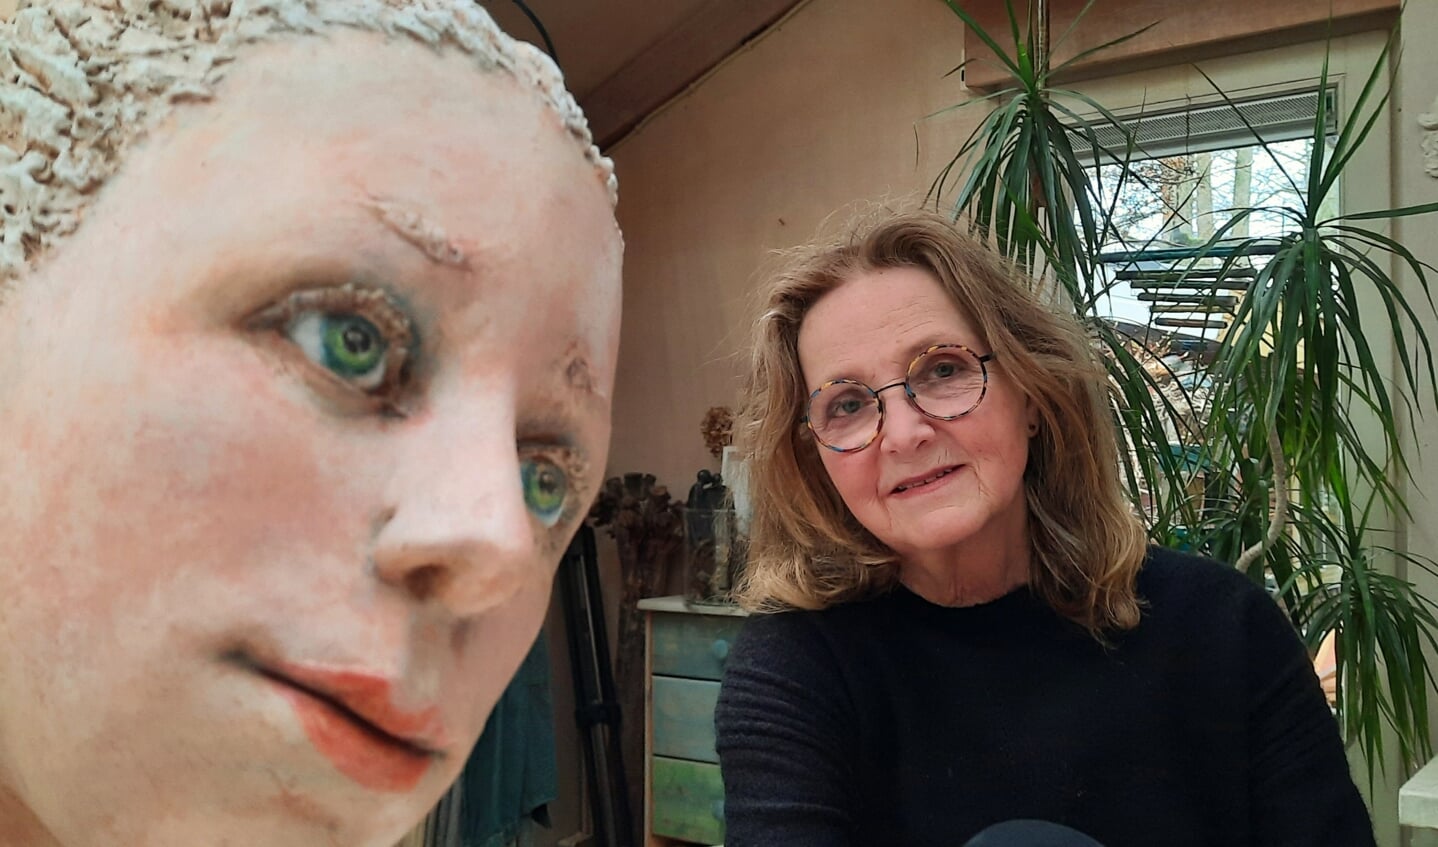 Jeanne te Dorsthorst geeft de workshop portret boetseren in het Kulturhus en in eigen atelier.
Foto: PR